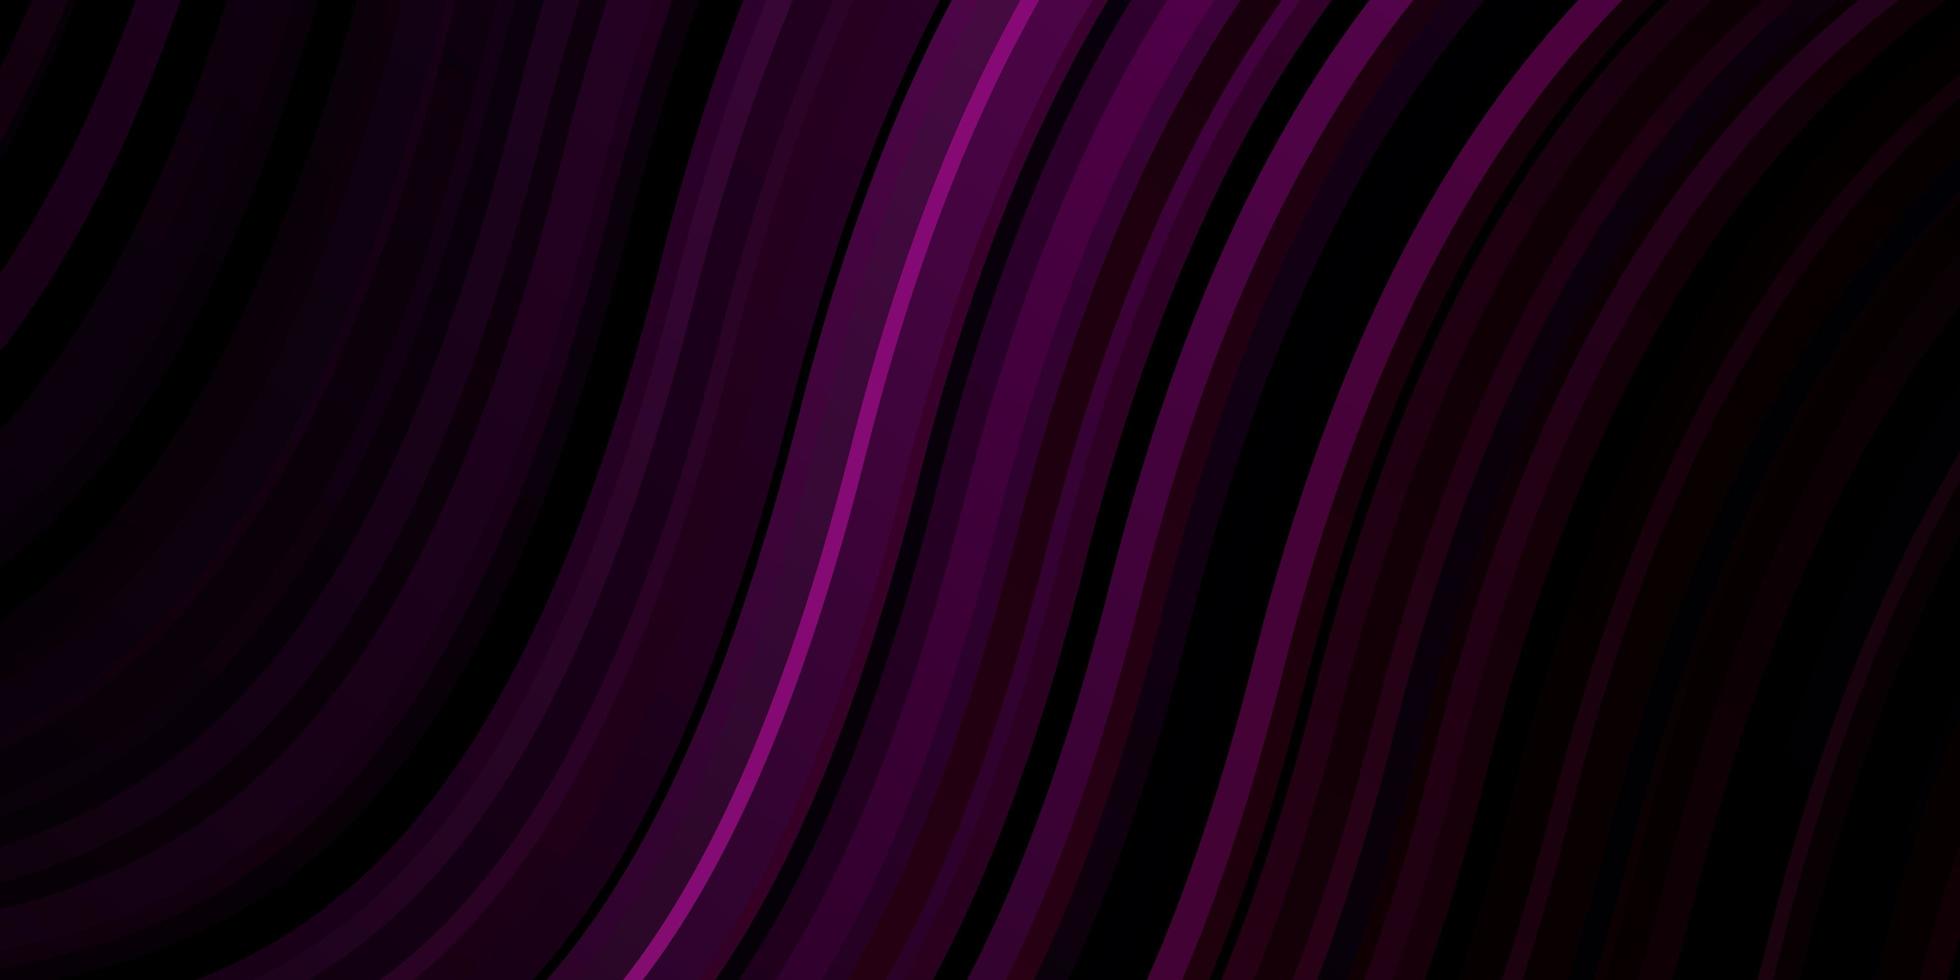 sfondo vettoriale viola scuro con fiocchi.